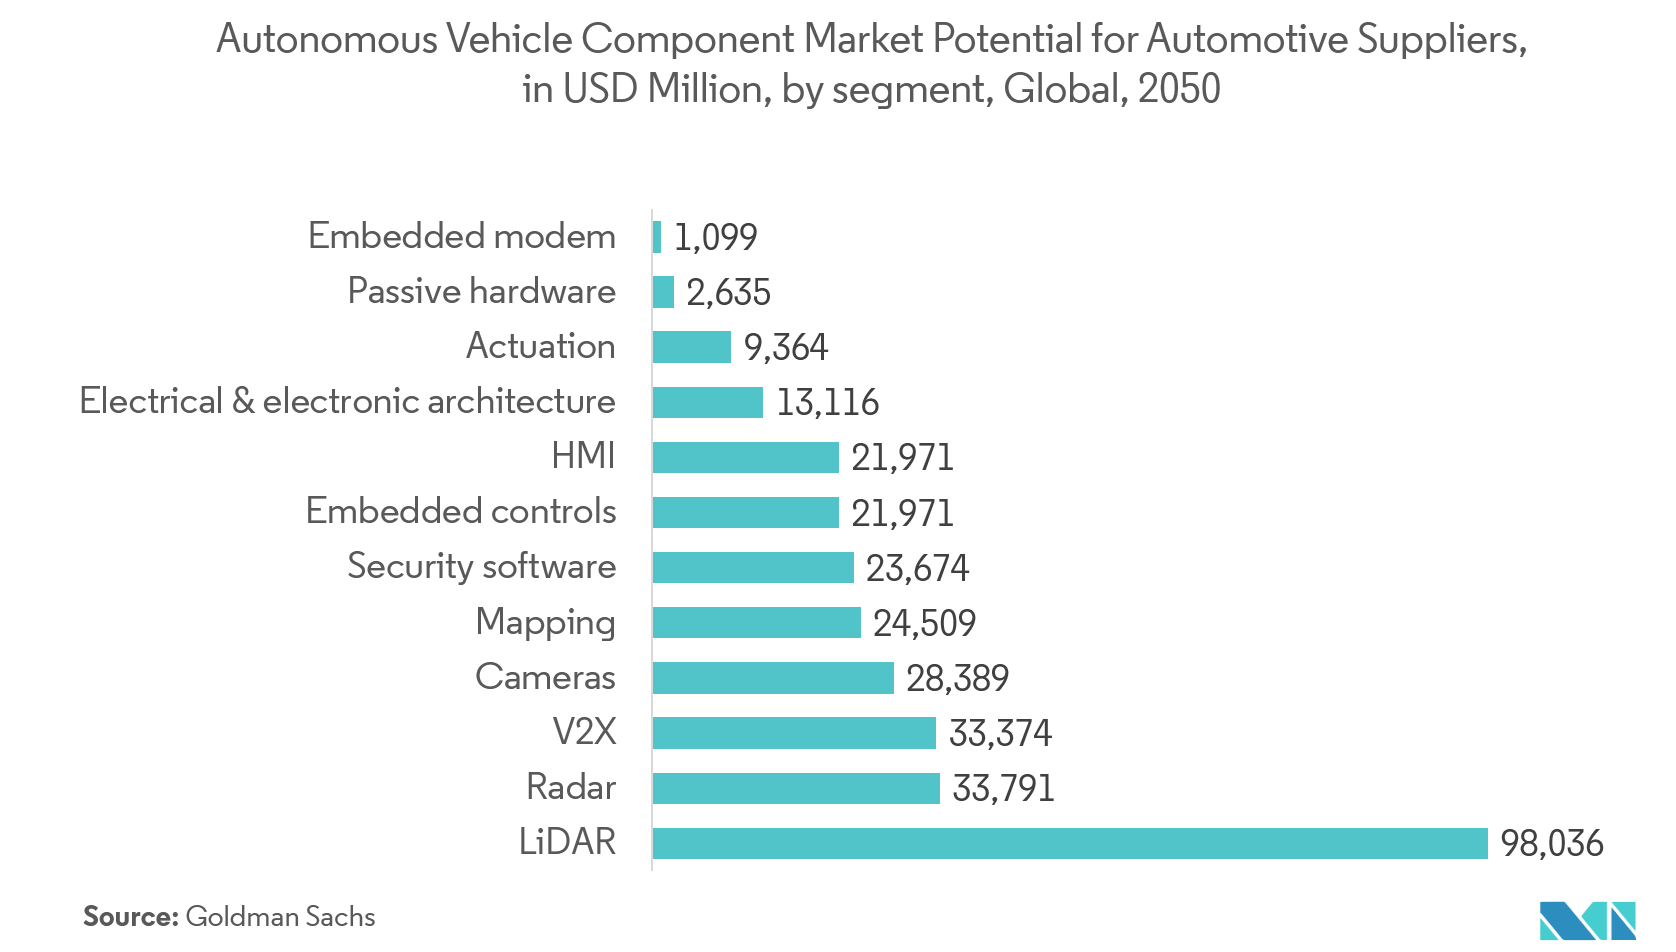 Potencial de mercado de componentes de vehículos autónomos para proveedores automotrices